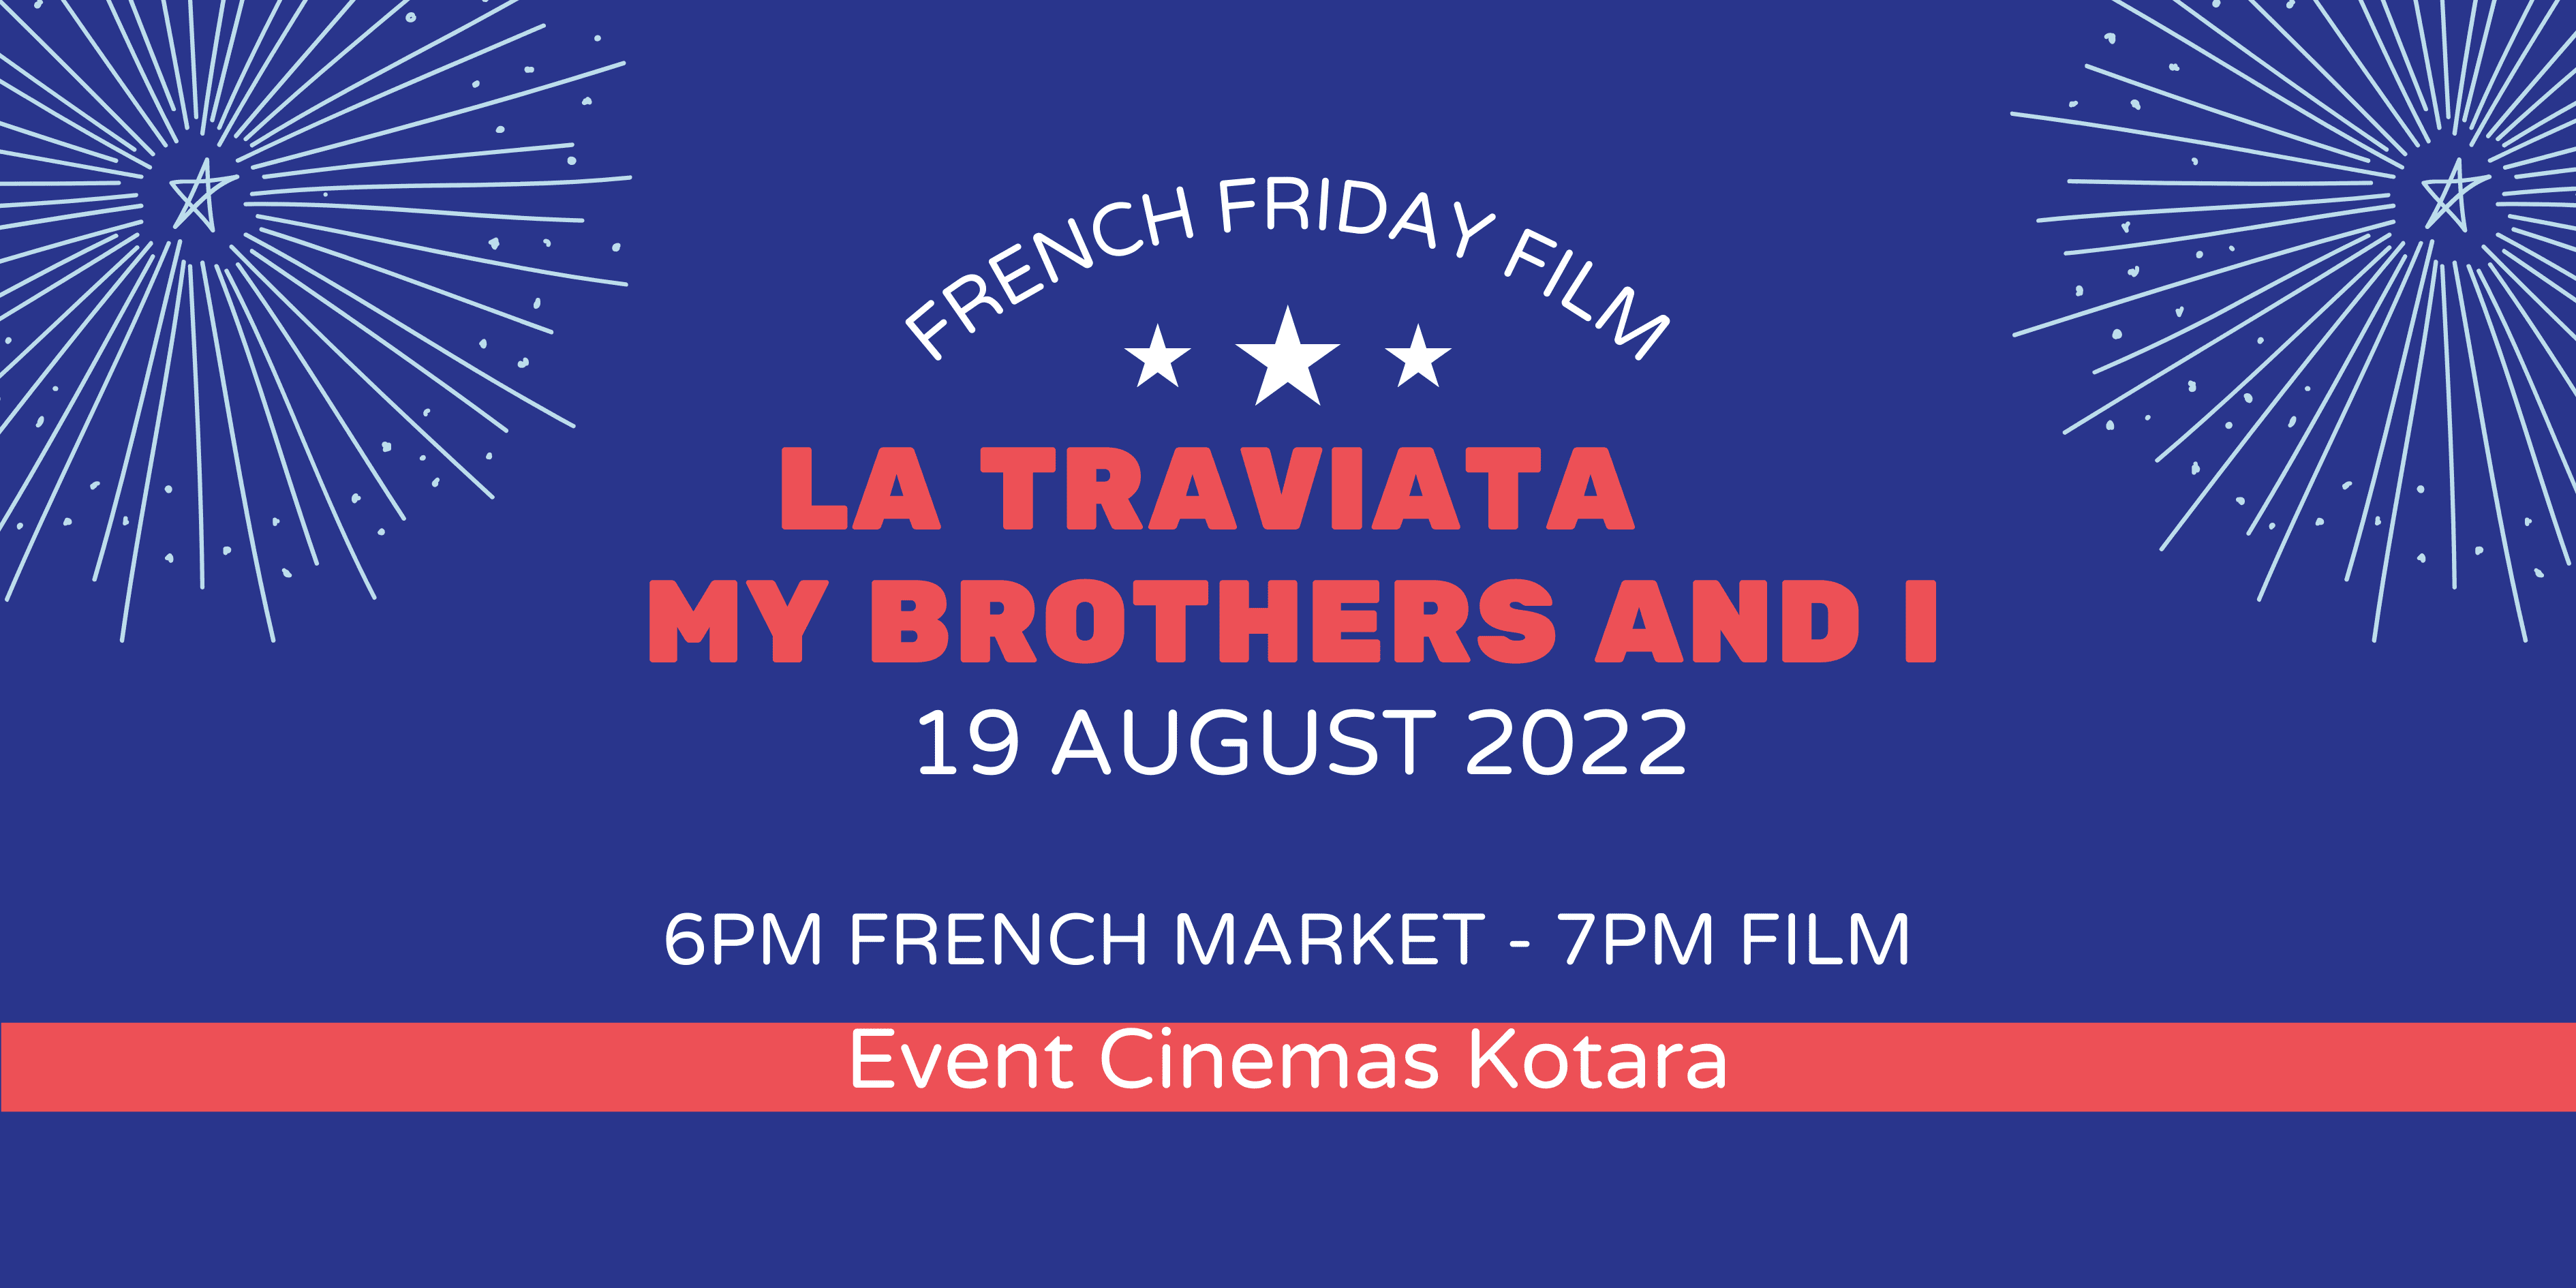 French Friday film